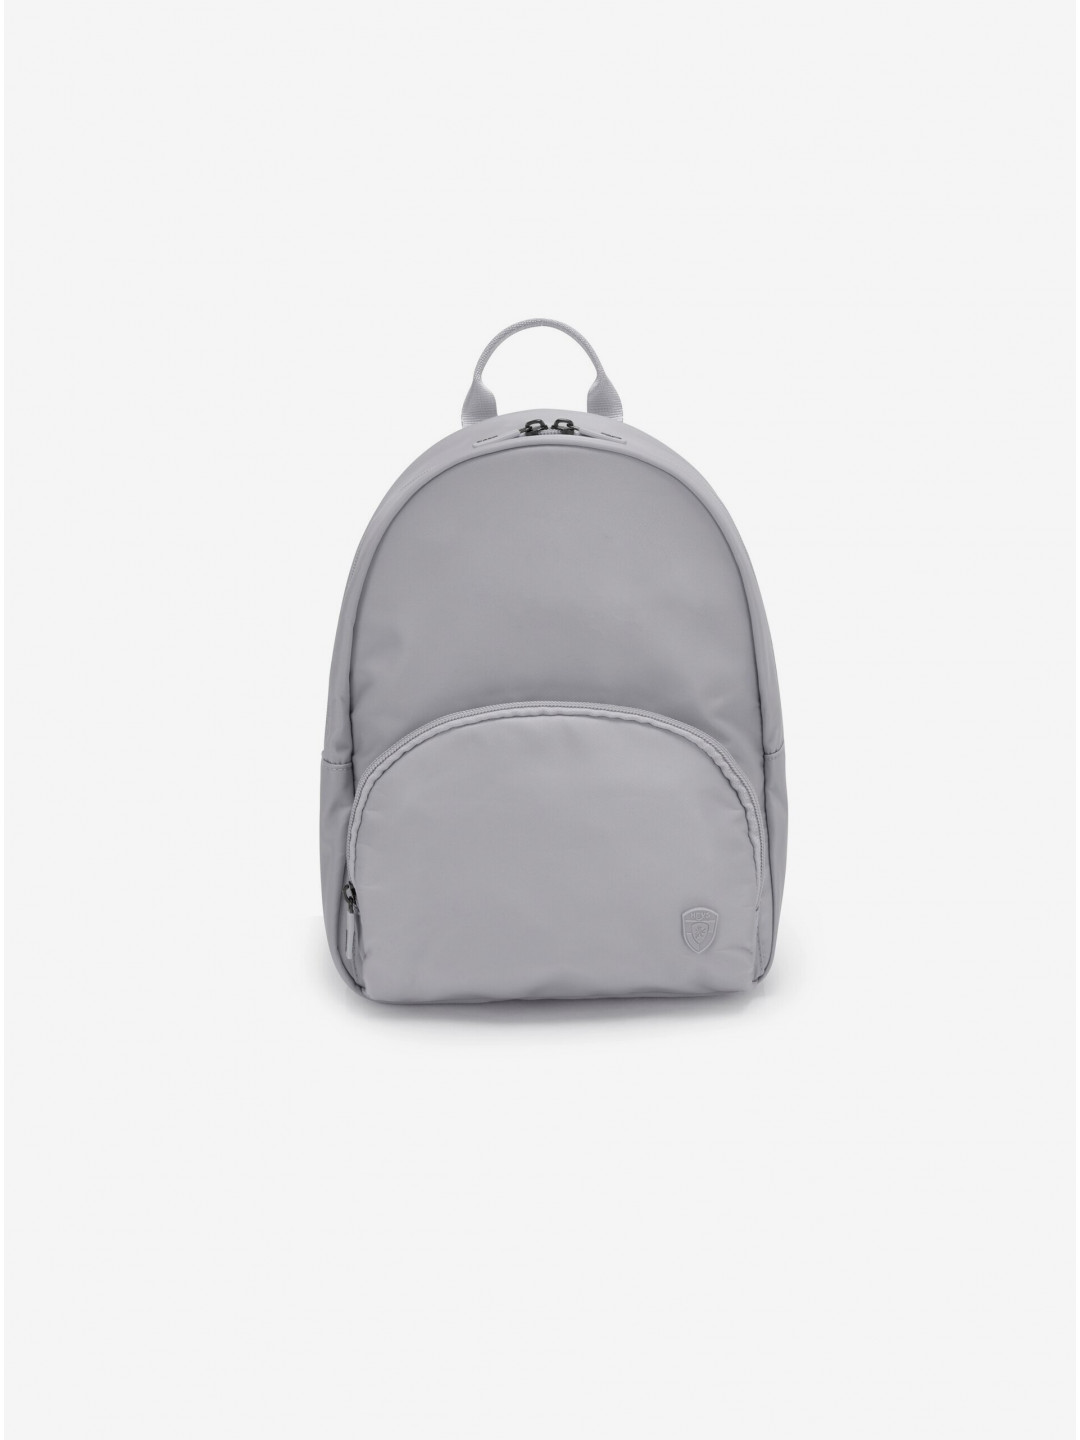 Šedý dámský batoh Heys Basic Backpack Grey